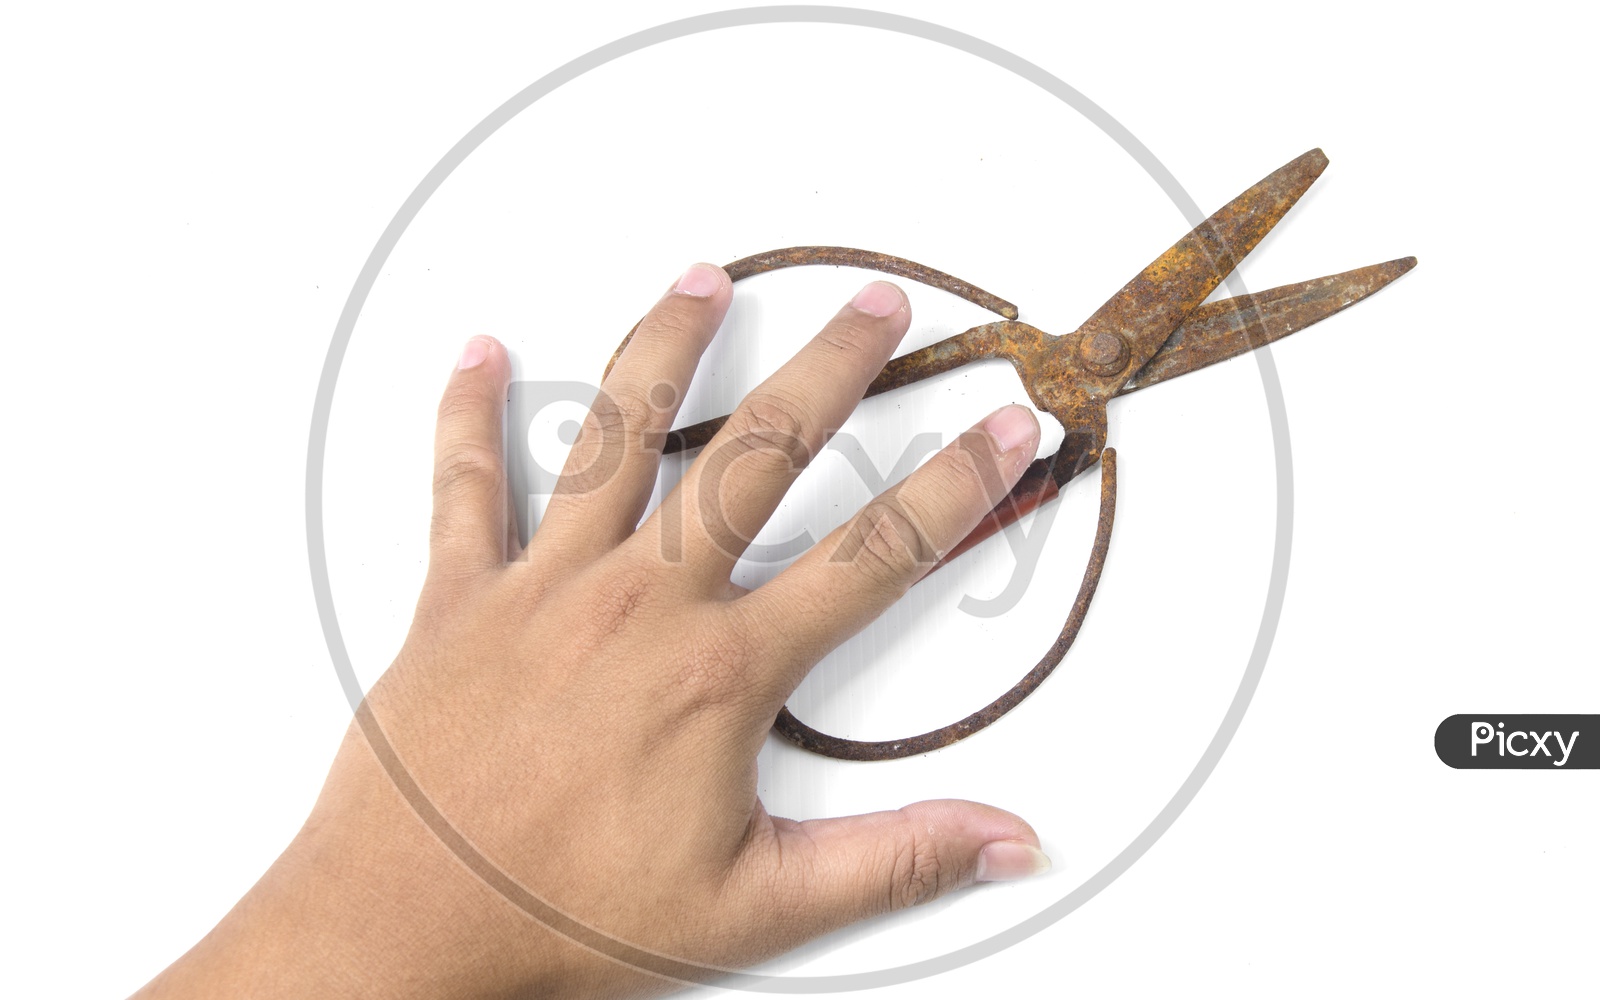 Old scissors in boy's hand